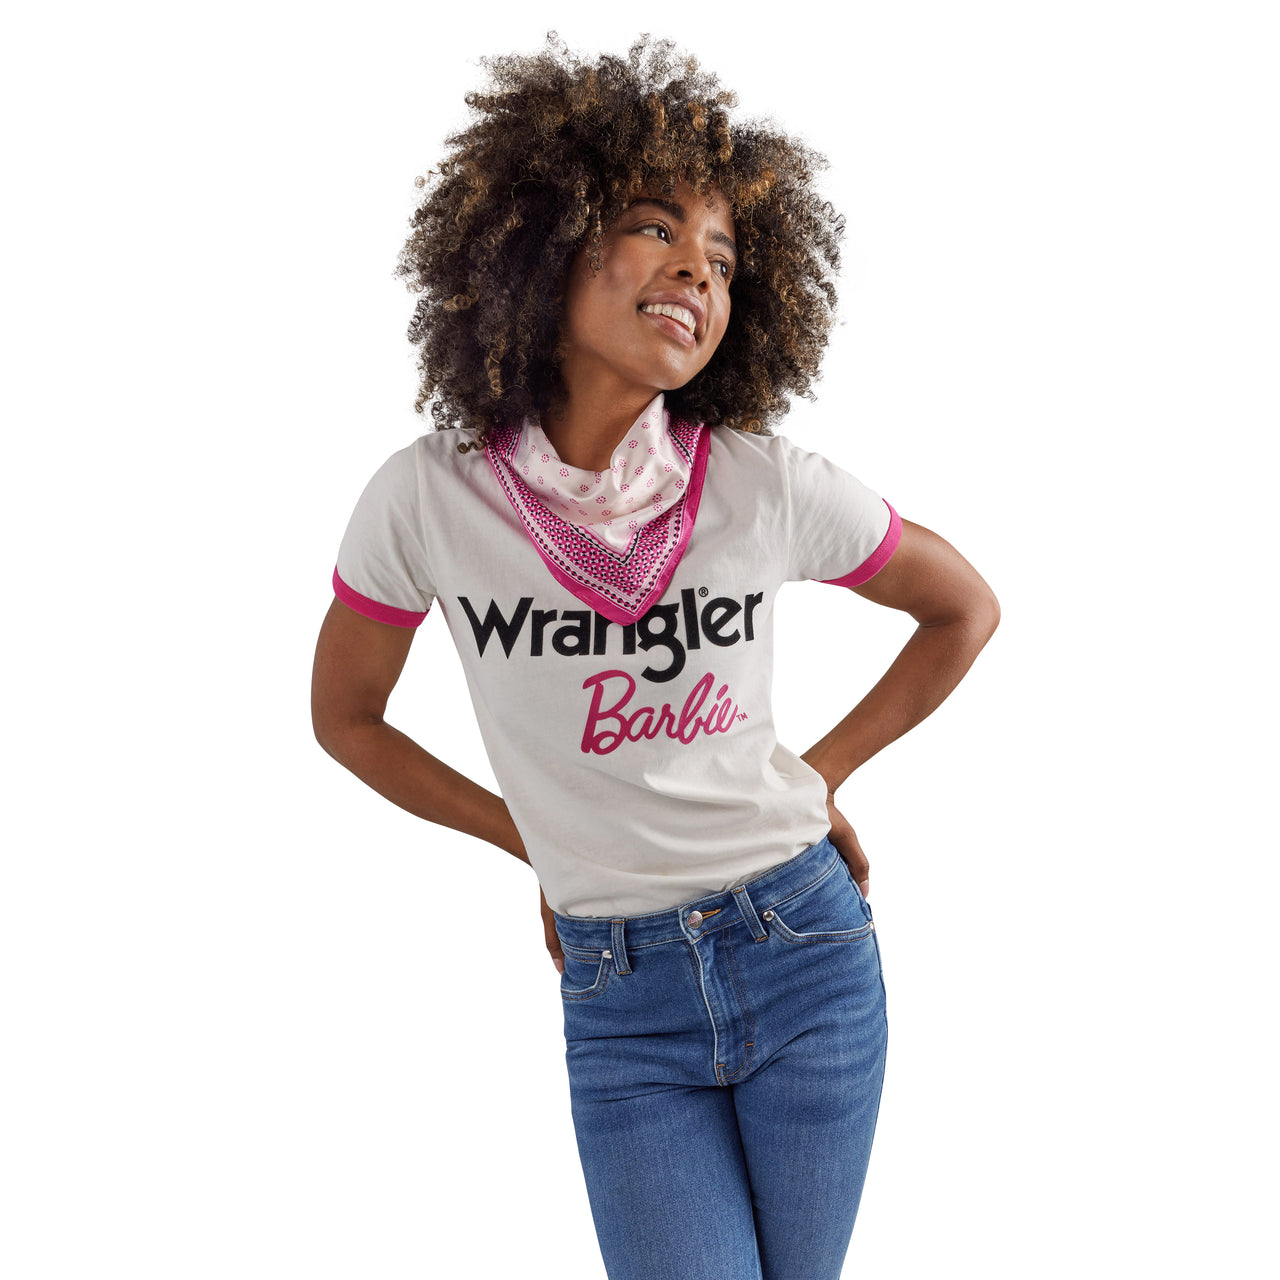 Wrangler X Barbie Ringer T-Shirt - White